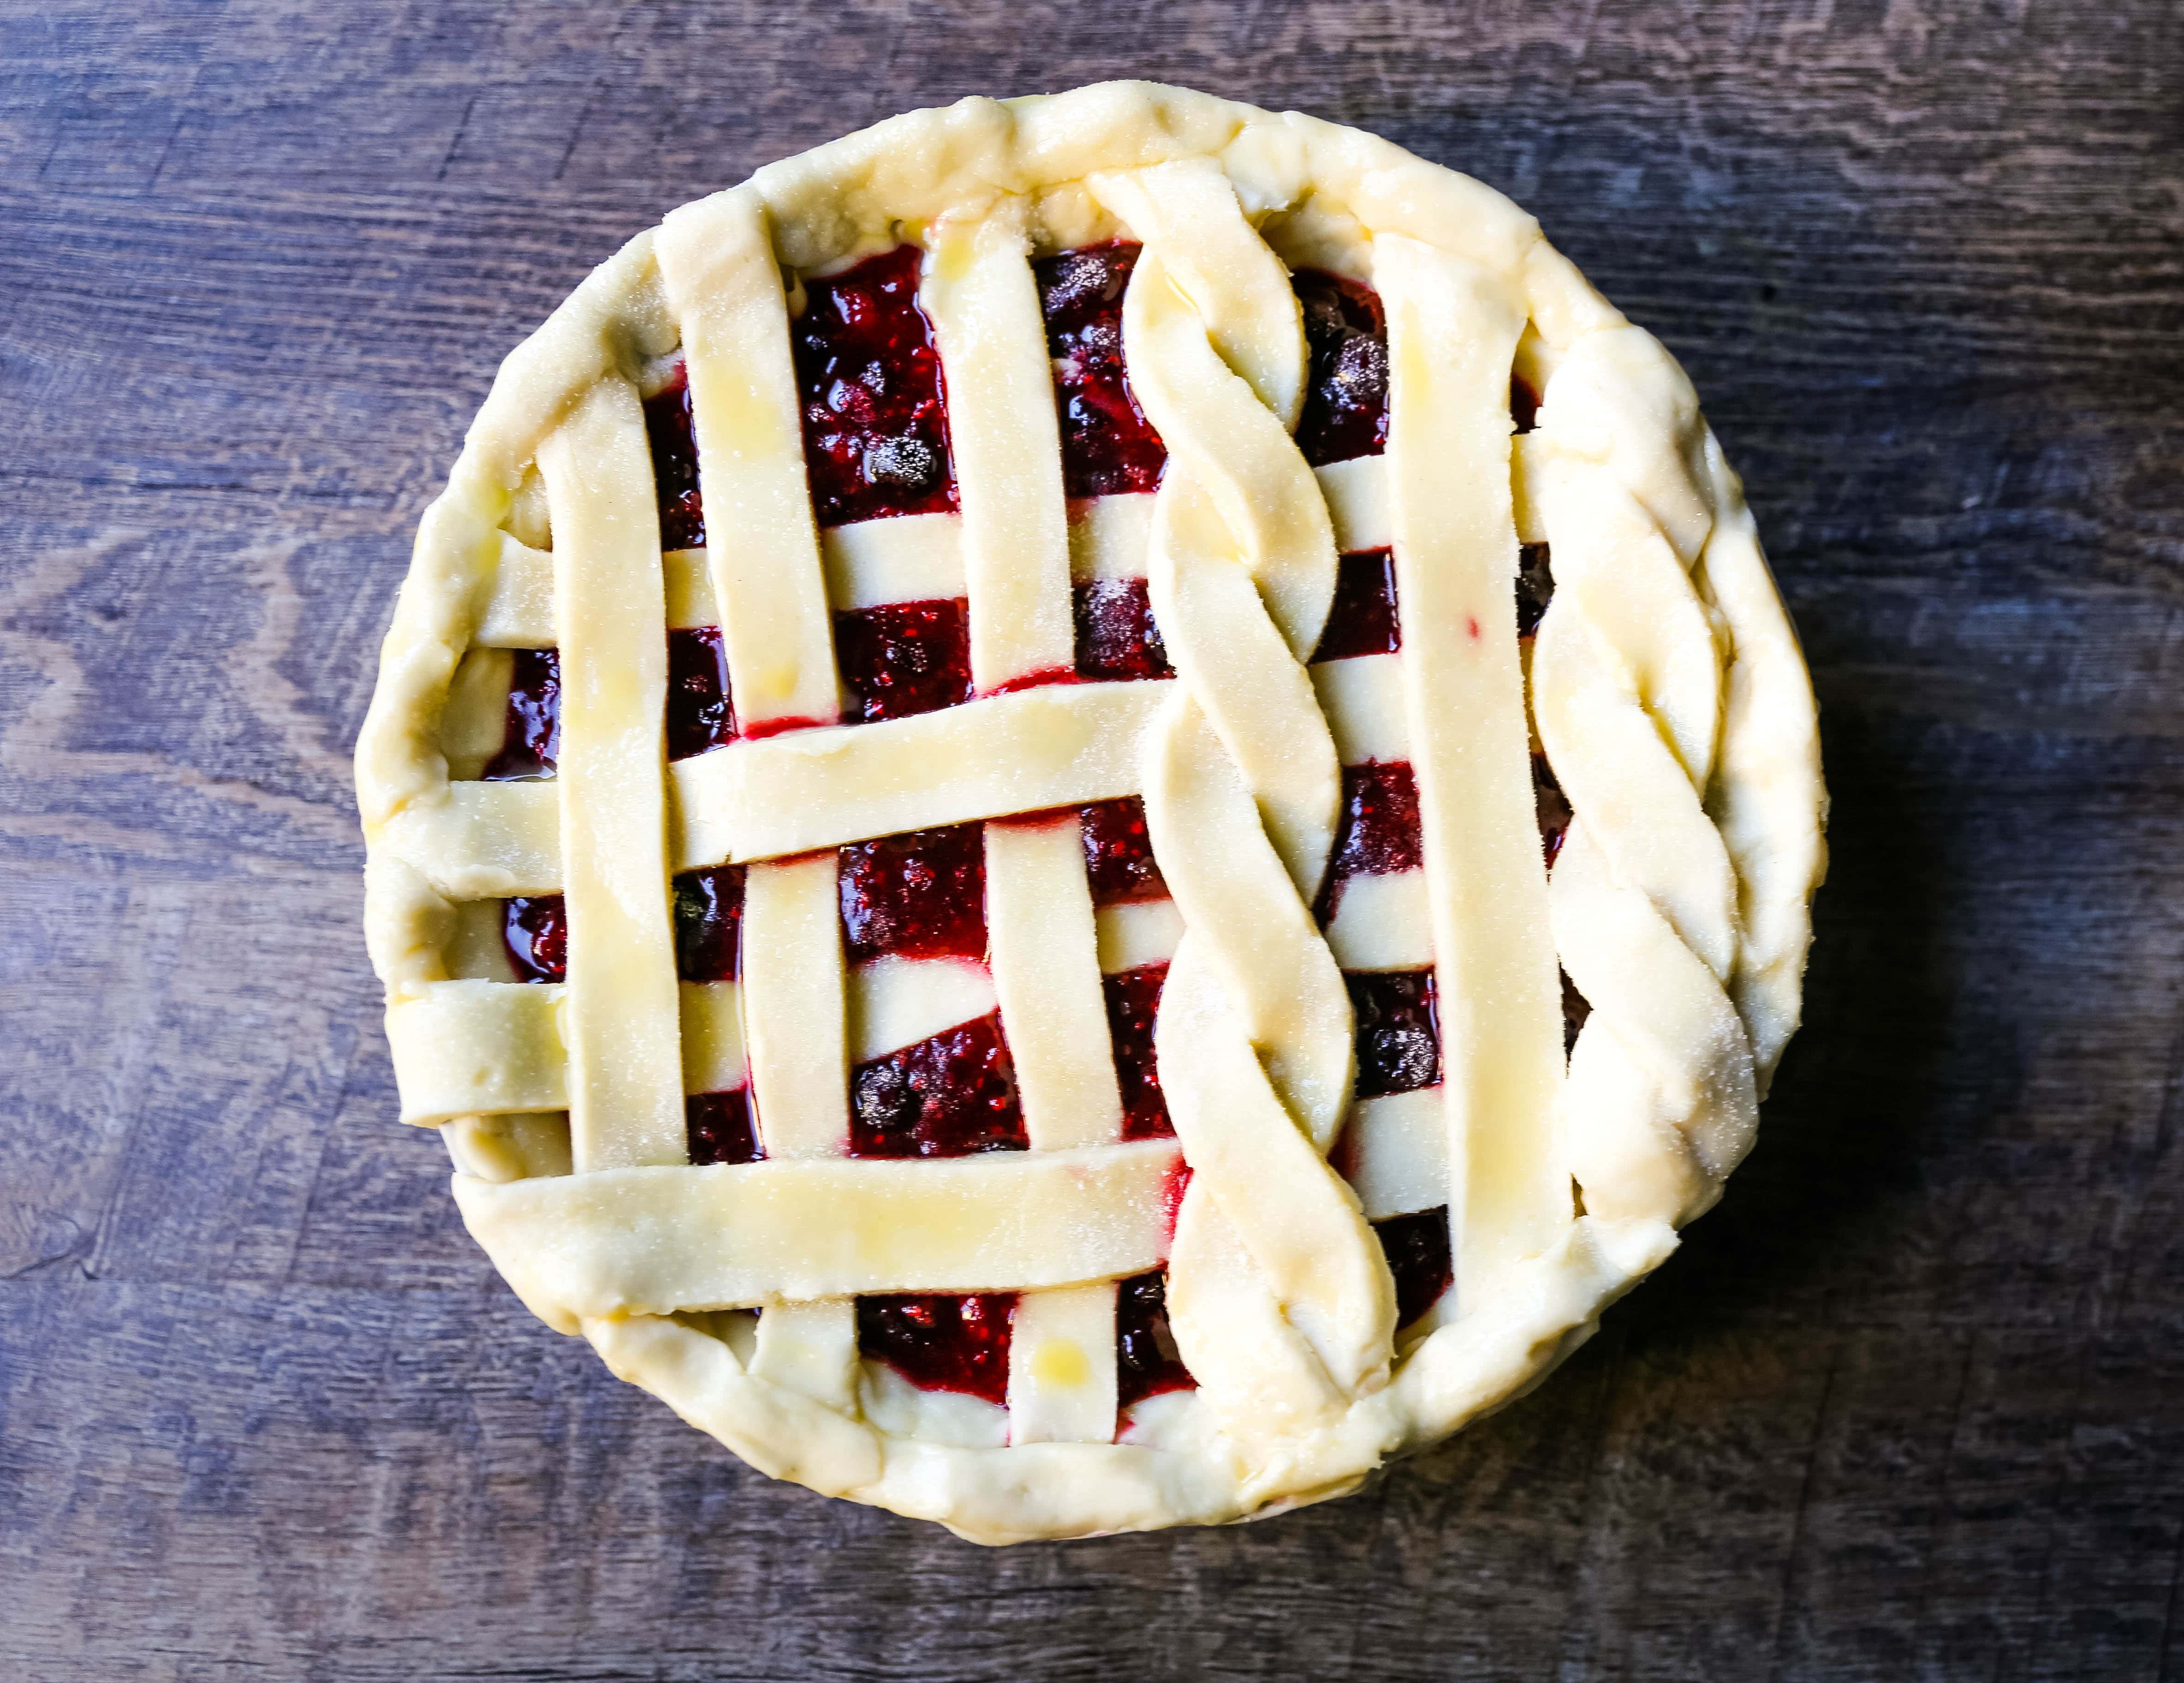 トリプル・ベリー・パイです。 バター風味のパイ生地を使った最高の自家製ベリーパイのレシピです。 バニラビーンズのアイスクリームをのせれば、完璧なベリーデザートの完成です。 www.modernhoney.com #berrypie #pie #berries #tripleberrypie #thanksgiving